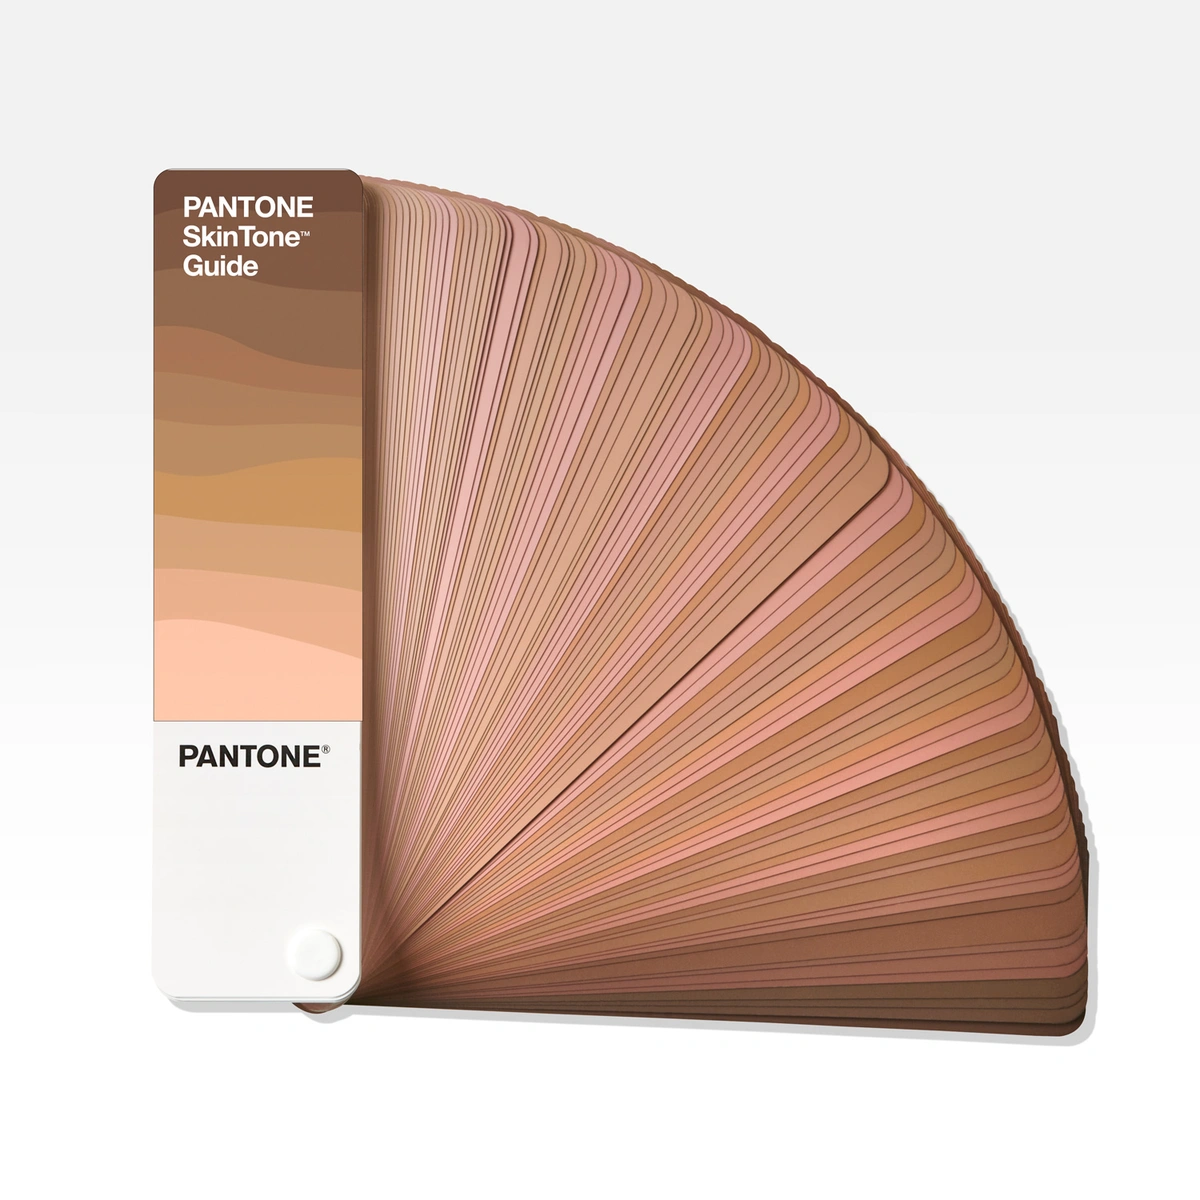 stg202-pantone-skintone-guide-product-1